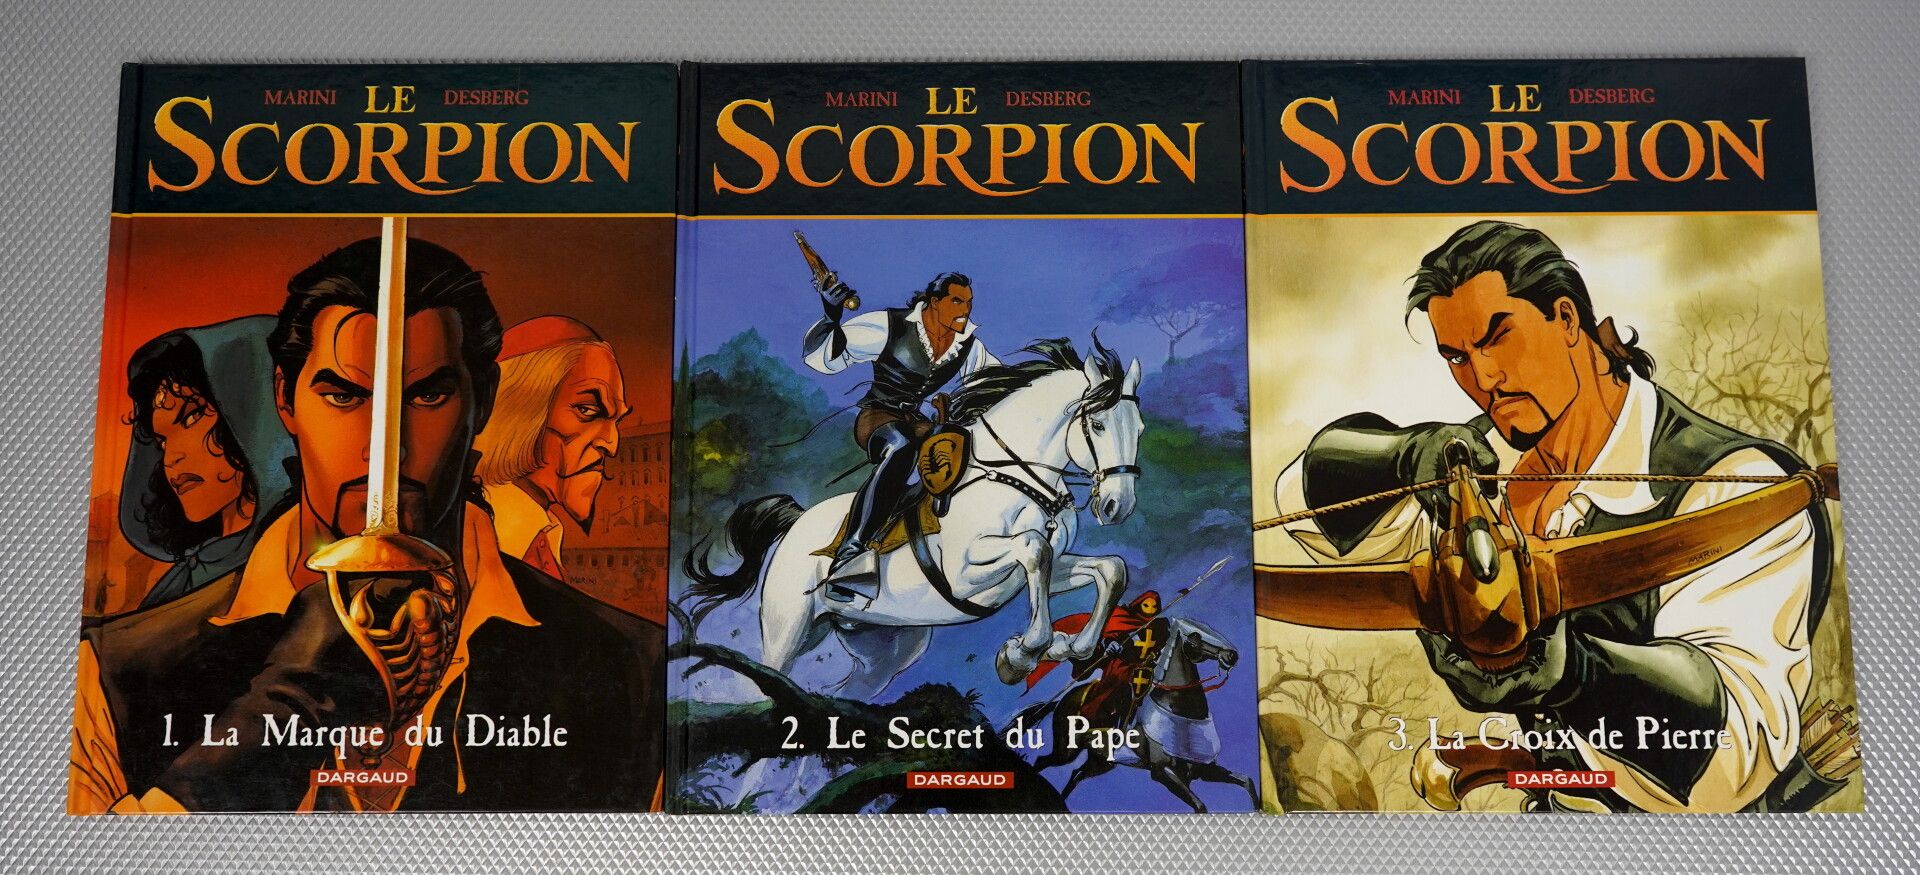 Null Le Scorpion (Marini e Desberg). 13 album.



I 13 volumi della saga, tutti &hellip;